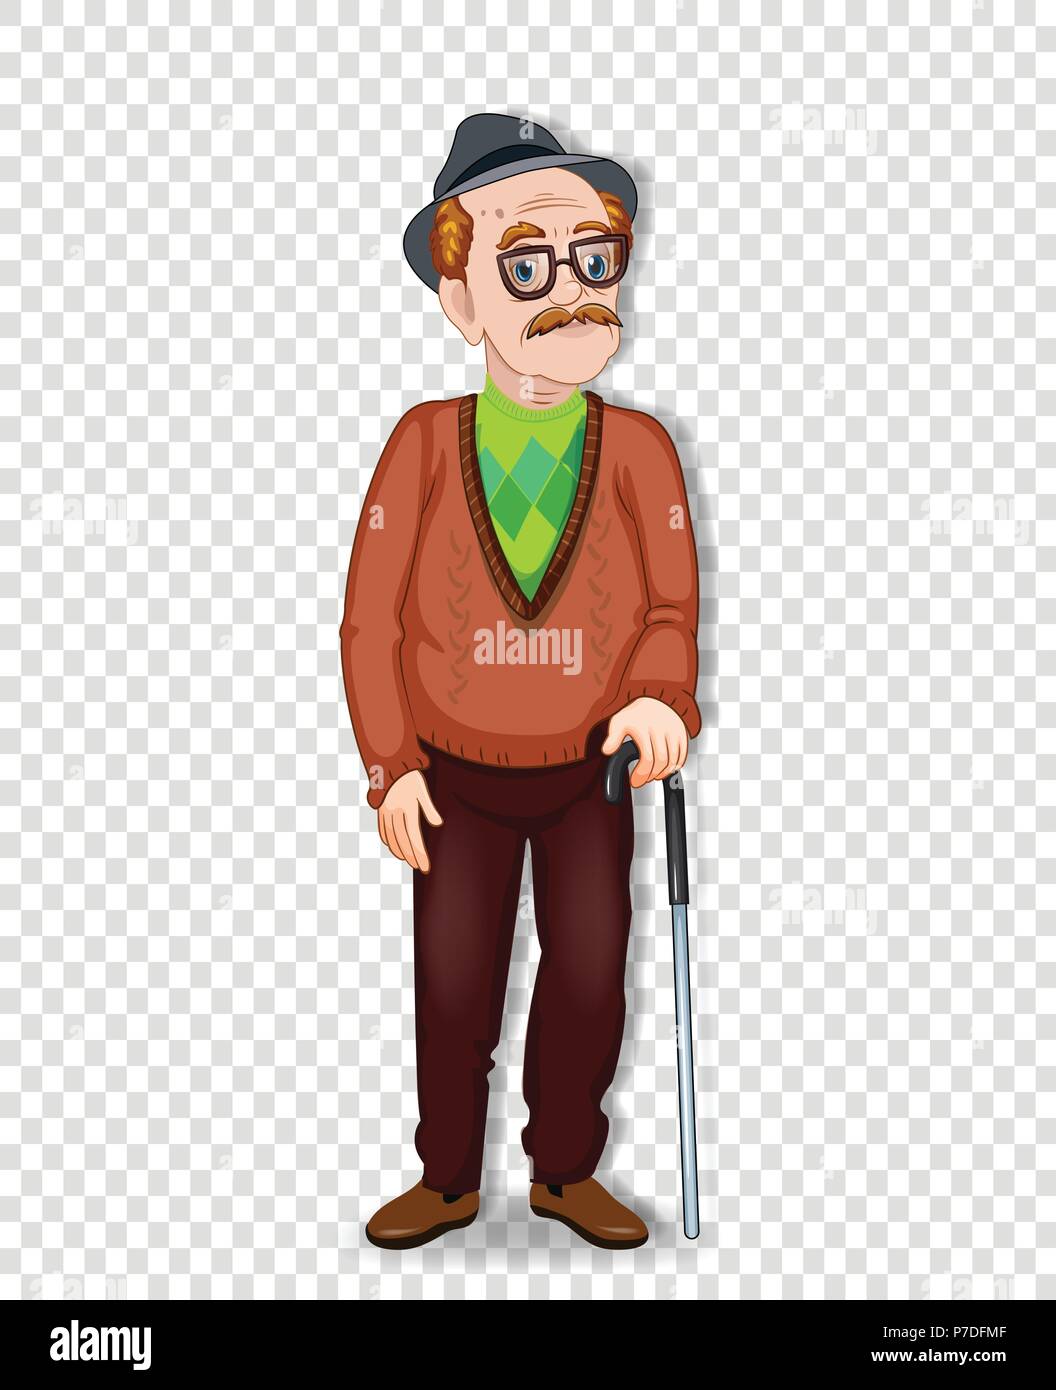 Cartoon Vector illustration d'un vieil homme de caractère. Un vieil homme pleine longueur avec des lunettes et canne wearing hat isolé sur fond transparent Illustration de Vecteur